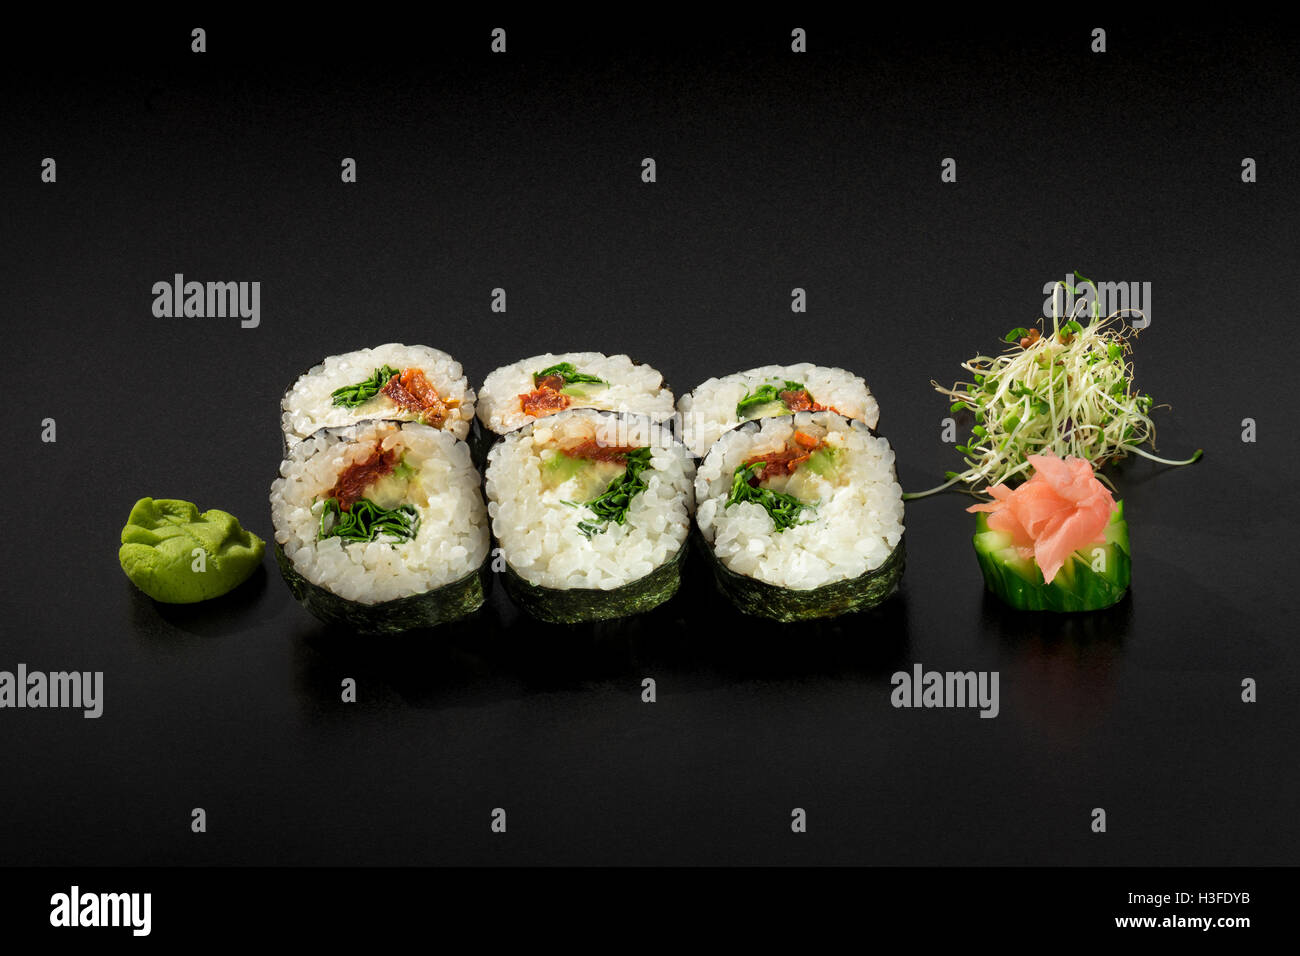 Rouleaux de sushi japonais décoré de salade d'algues et wasabi Banque D'Images